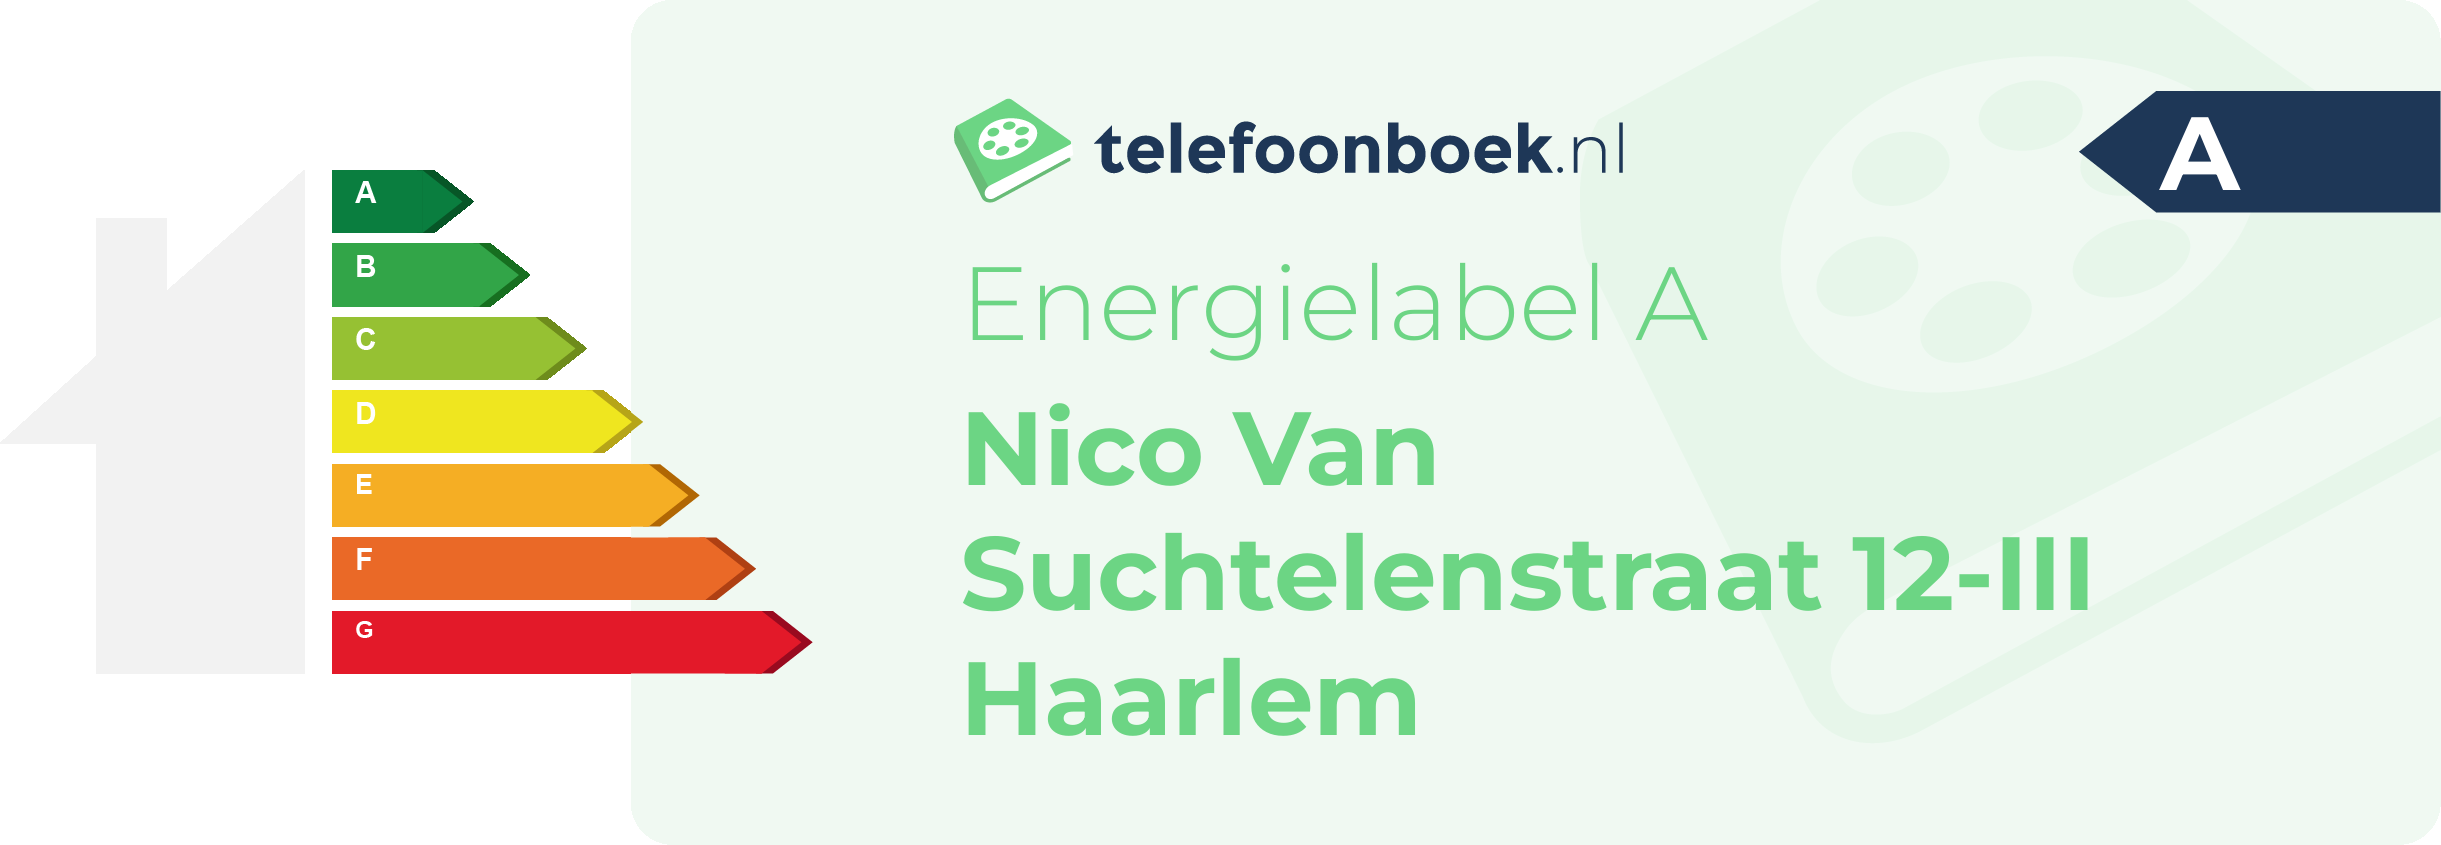 Energielabel Nico Van Suchtelenstraat 12-III Haarlem